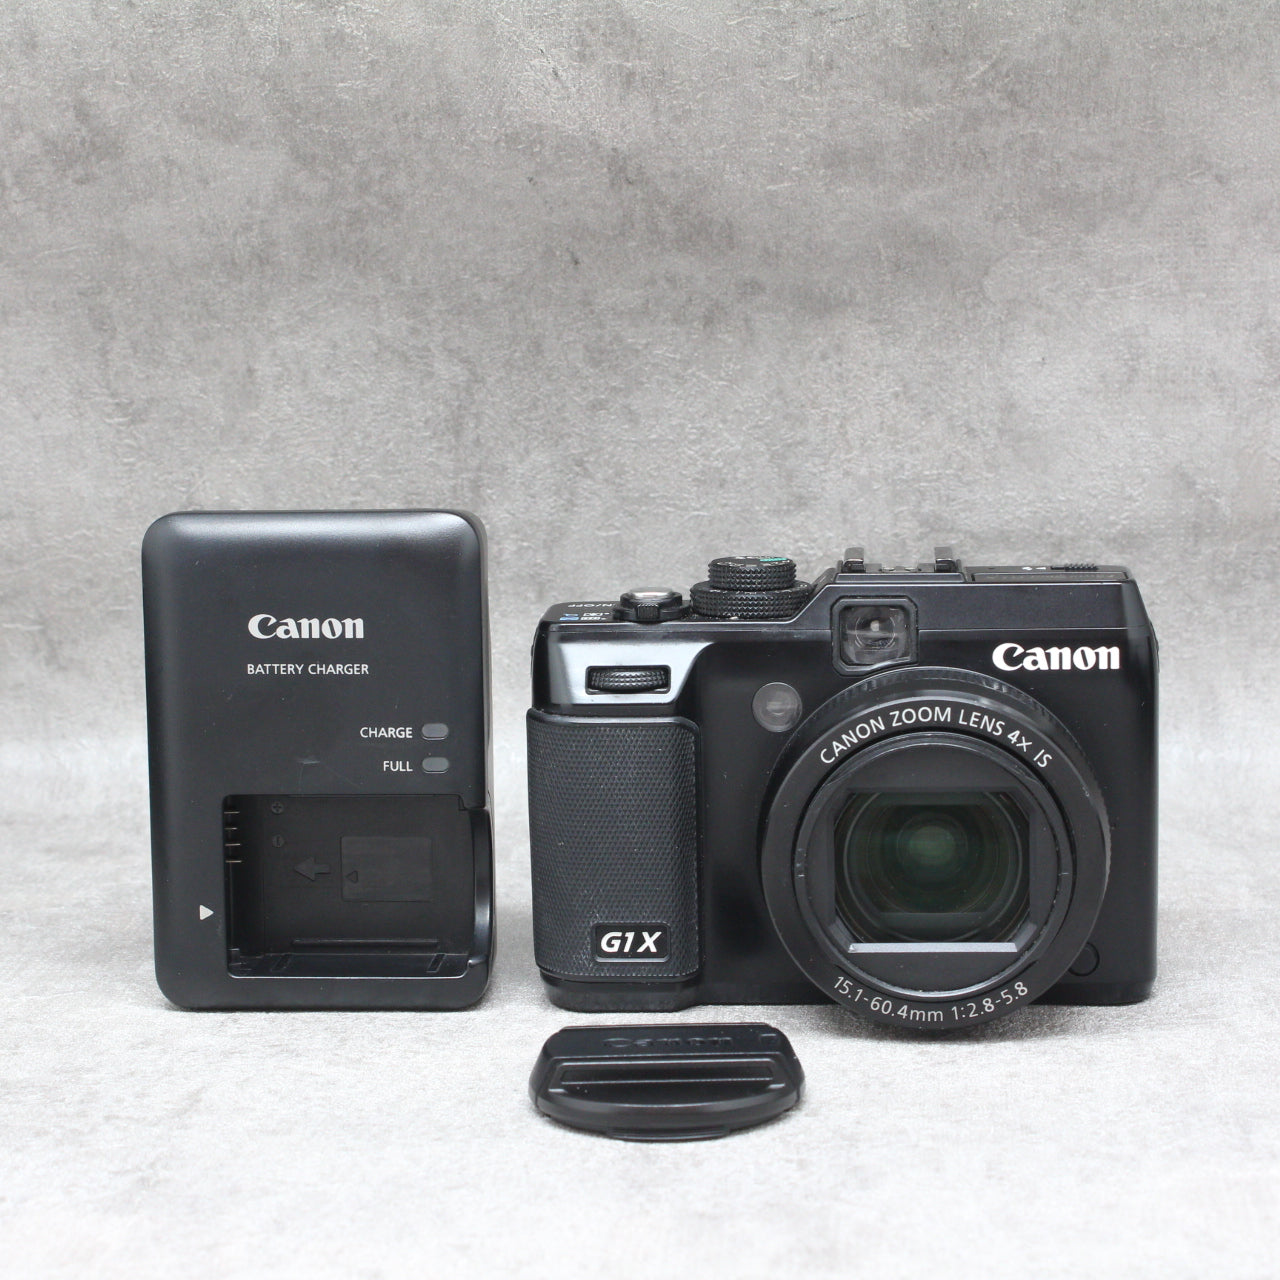 中古品 Canon Power shot G1X – サトカメオンラインショップ